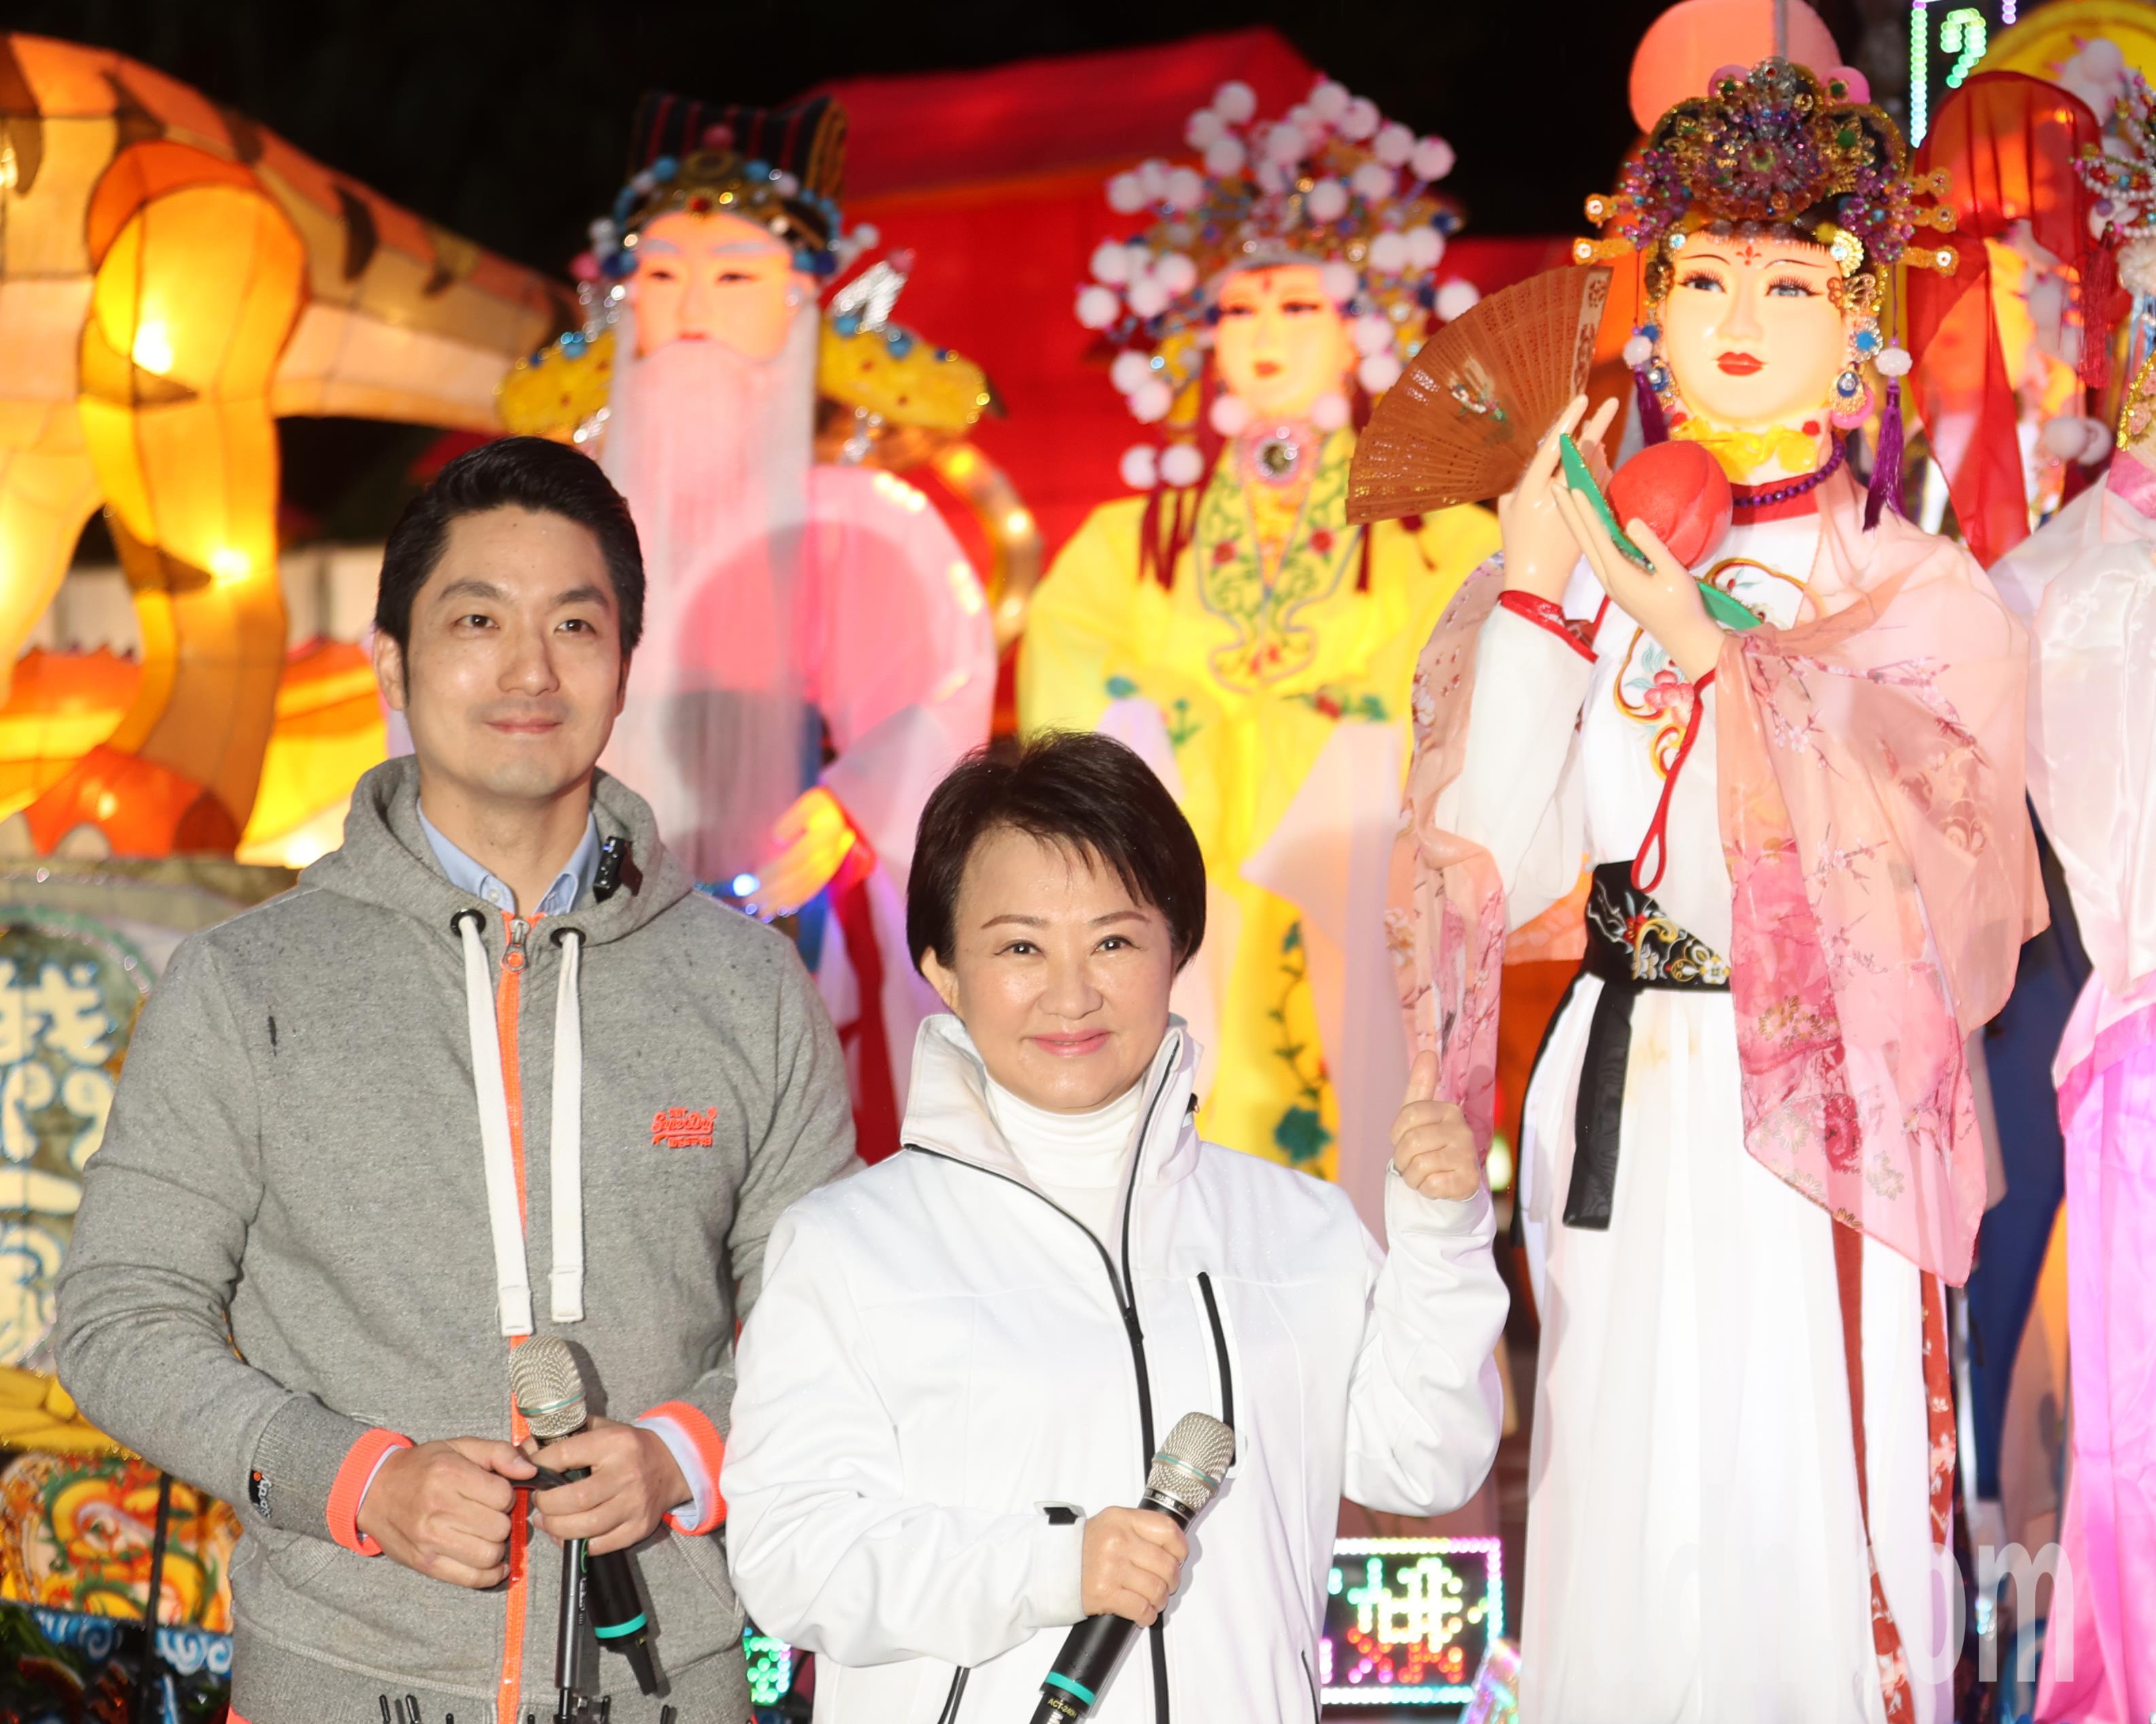 台北市长蒋万安（左）下午陪同台中市长卢秀燕（中）造访台北灯节，卢秀燕特地前往观看「撞脸」的人偶花灯（右上），谦虚表示人偶比她漂亮很多。记者苏健忠／摄影